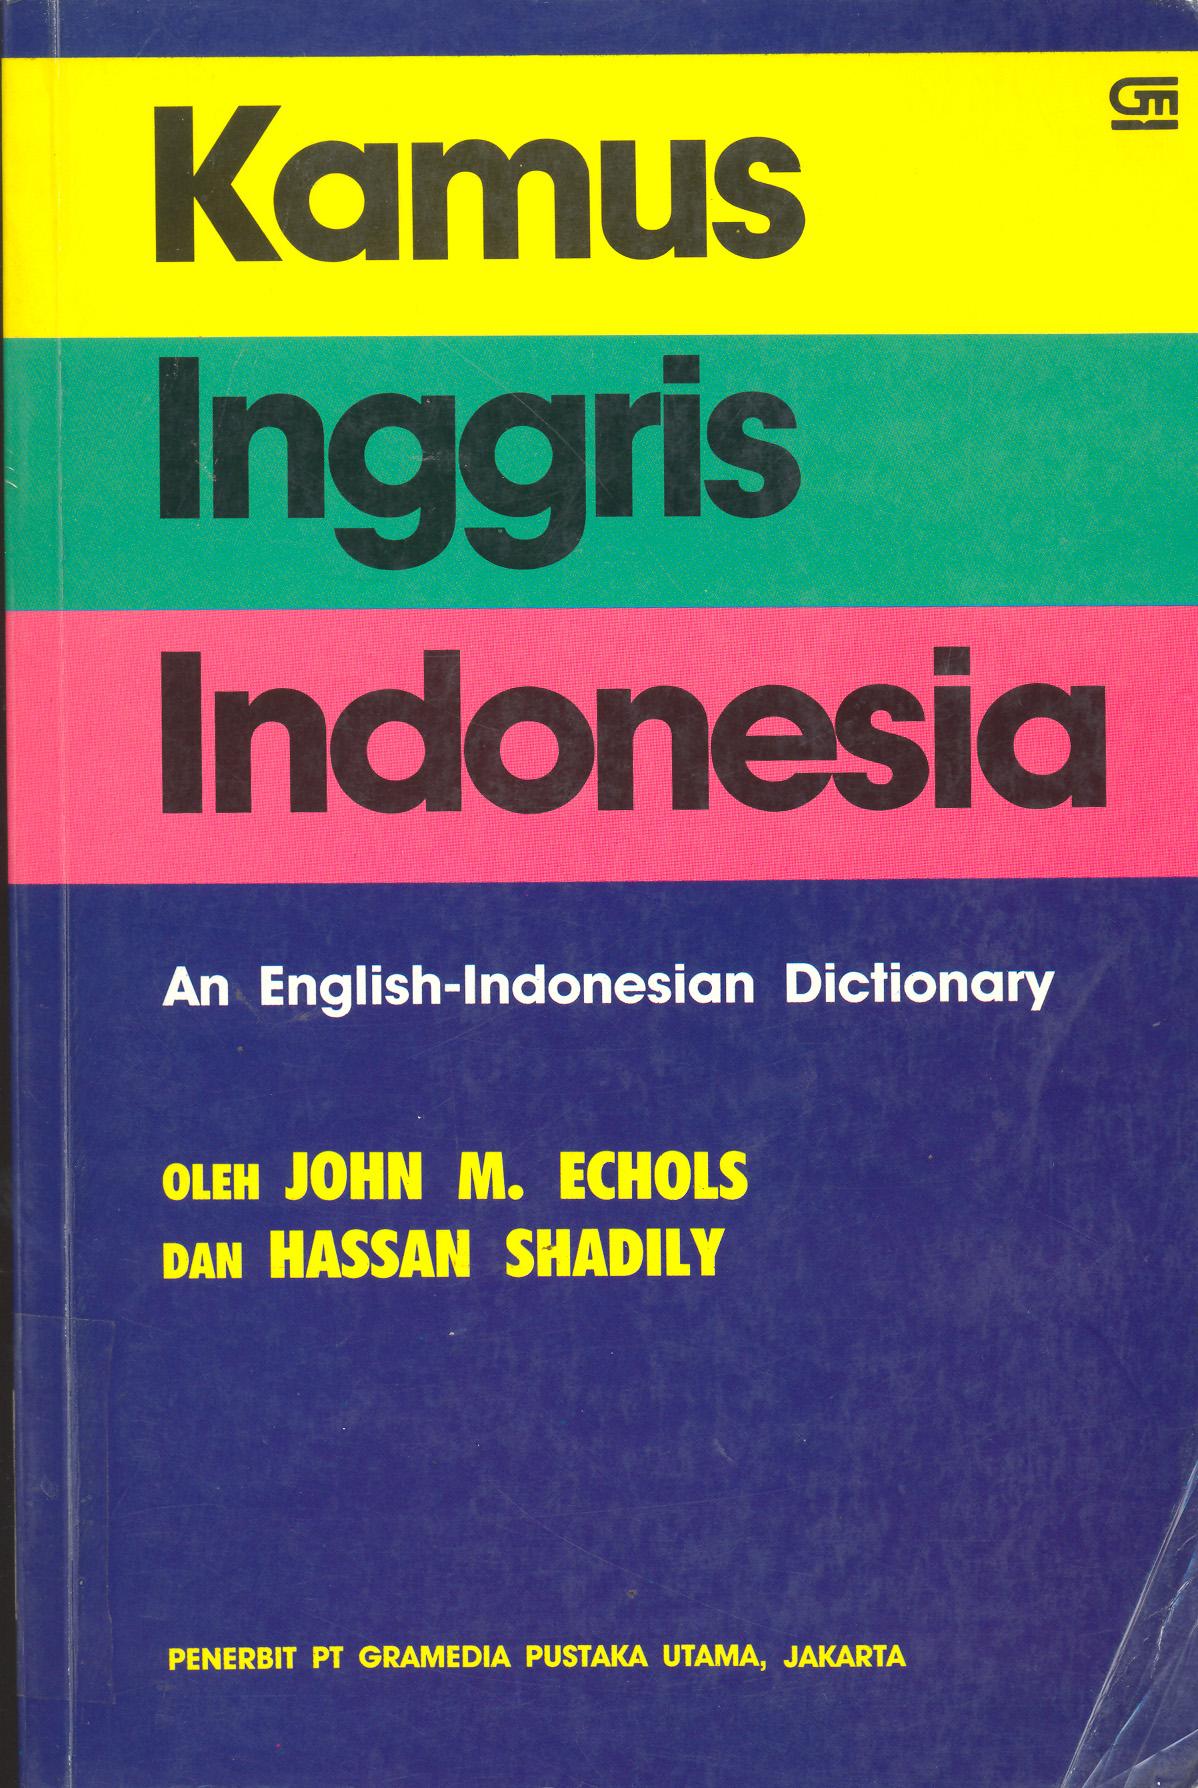 Inggris Indonesia Kamus